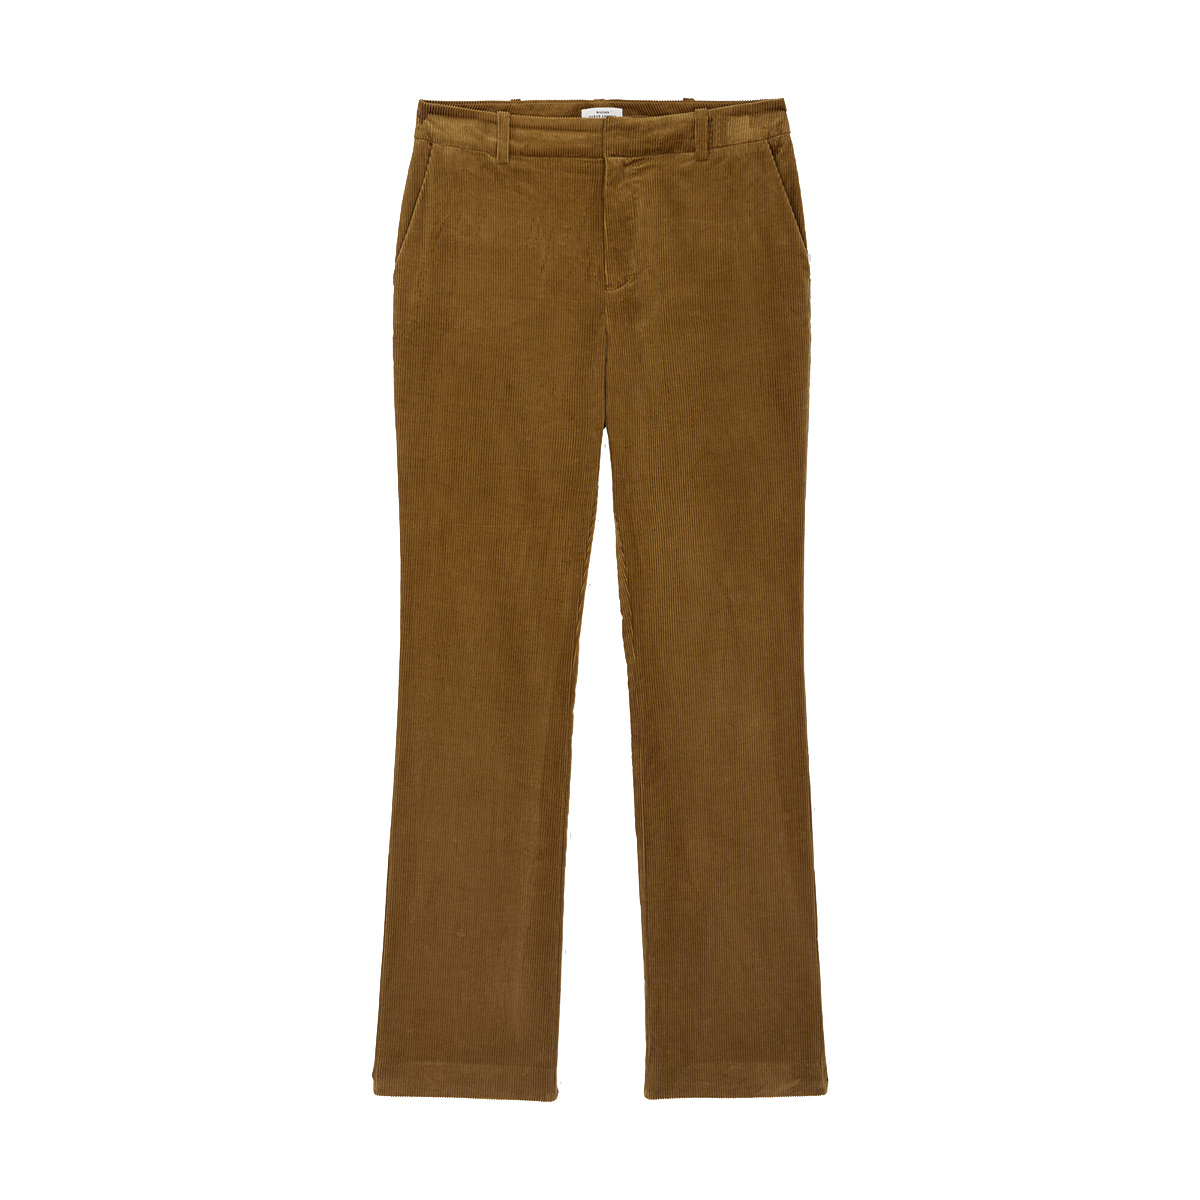 Rivoli Suit Trousers, Mordoré - Corduroy- 100% Cotton - image 1